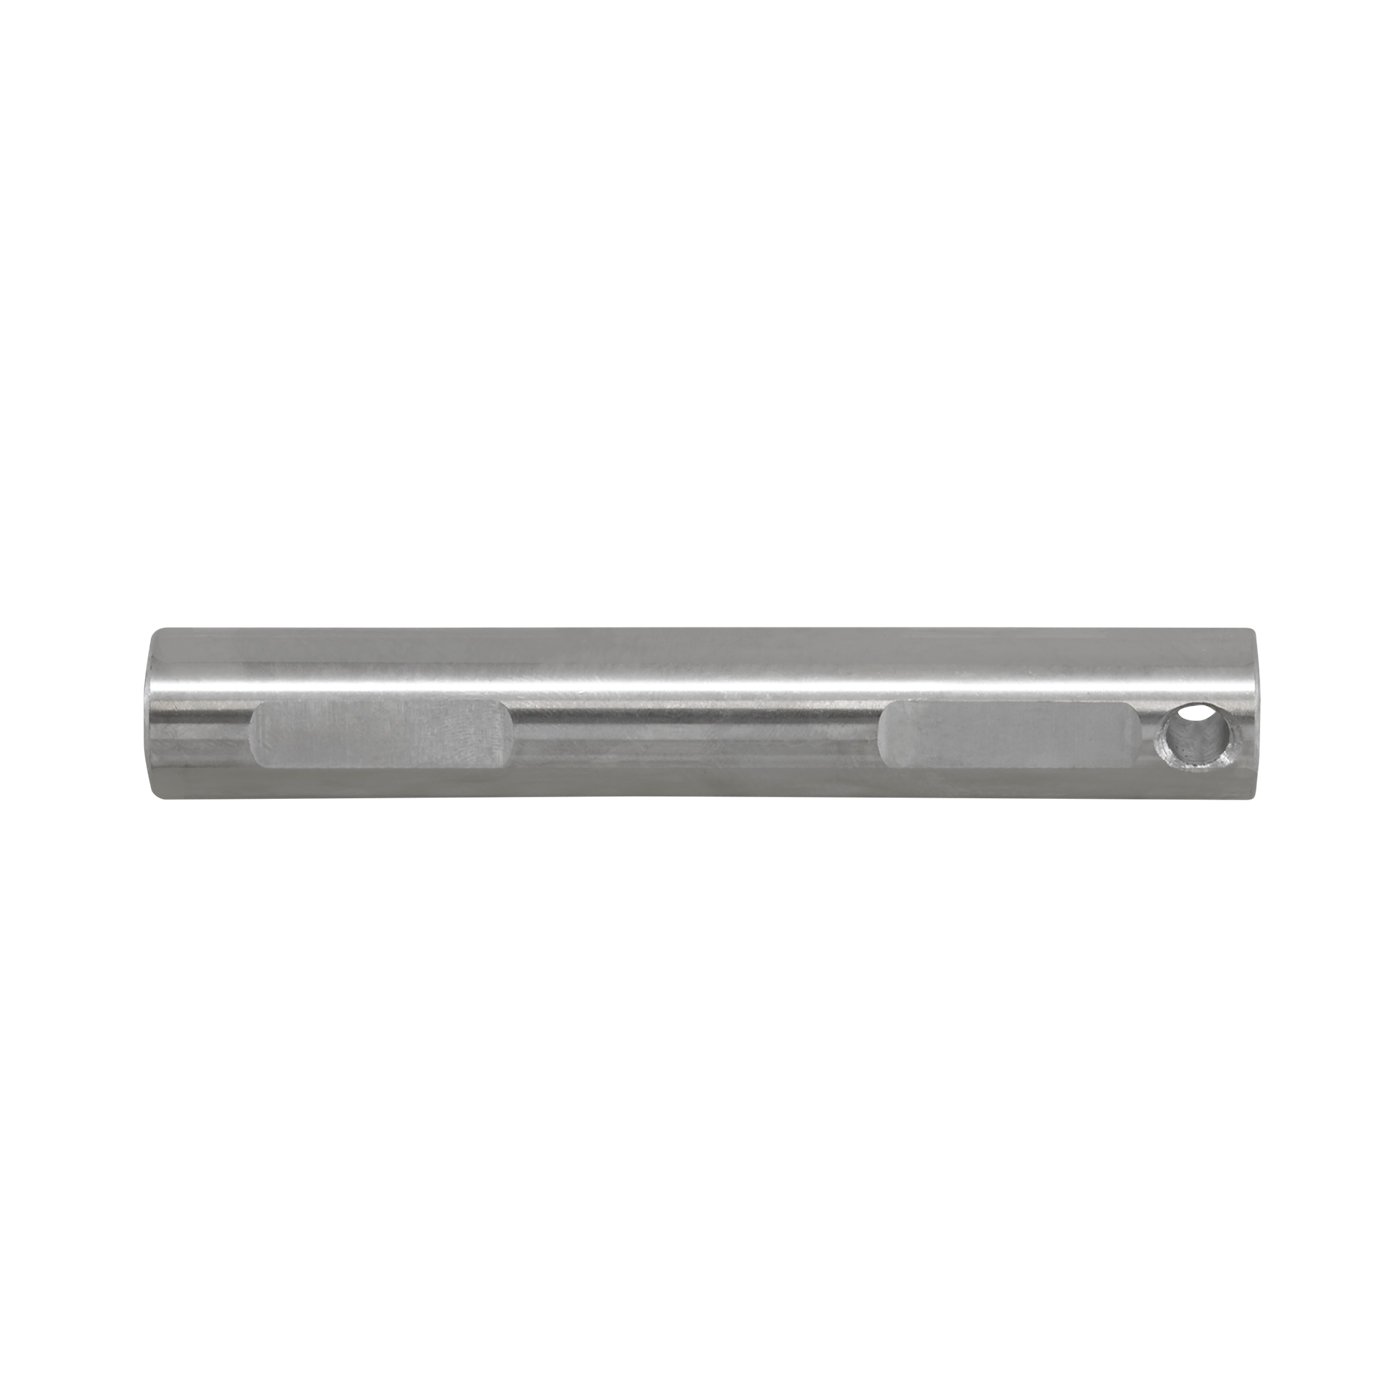 Replacement Cross Pin Shaft For Standard Open Dana